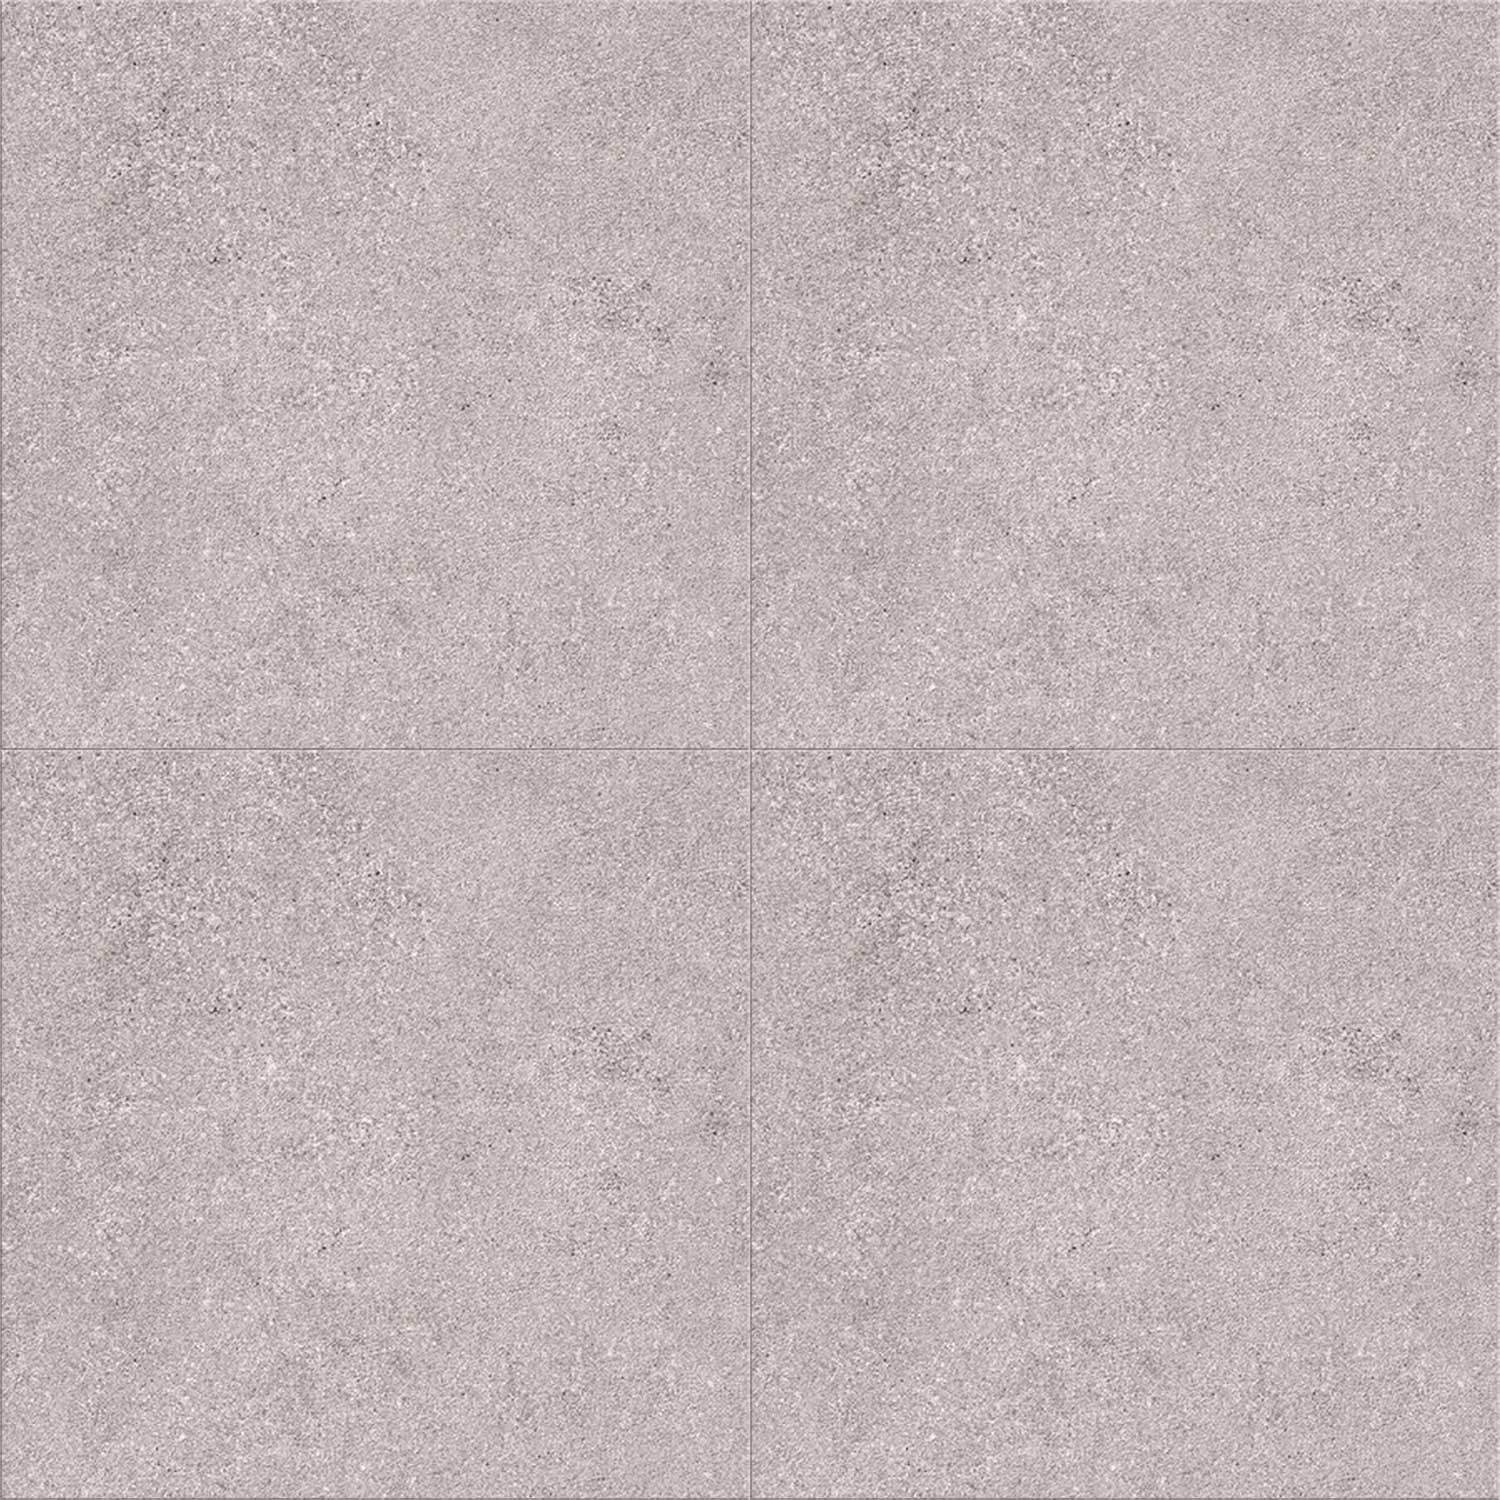 Normandie Grey Porcelain Floor Tile Concrete Effect 600 x 600mm